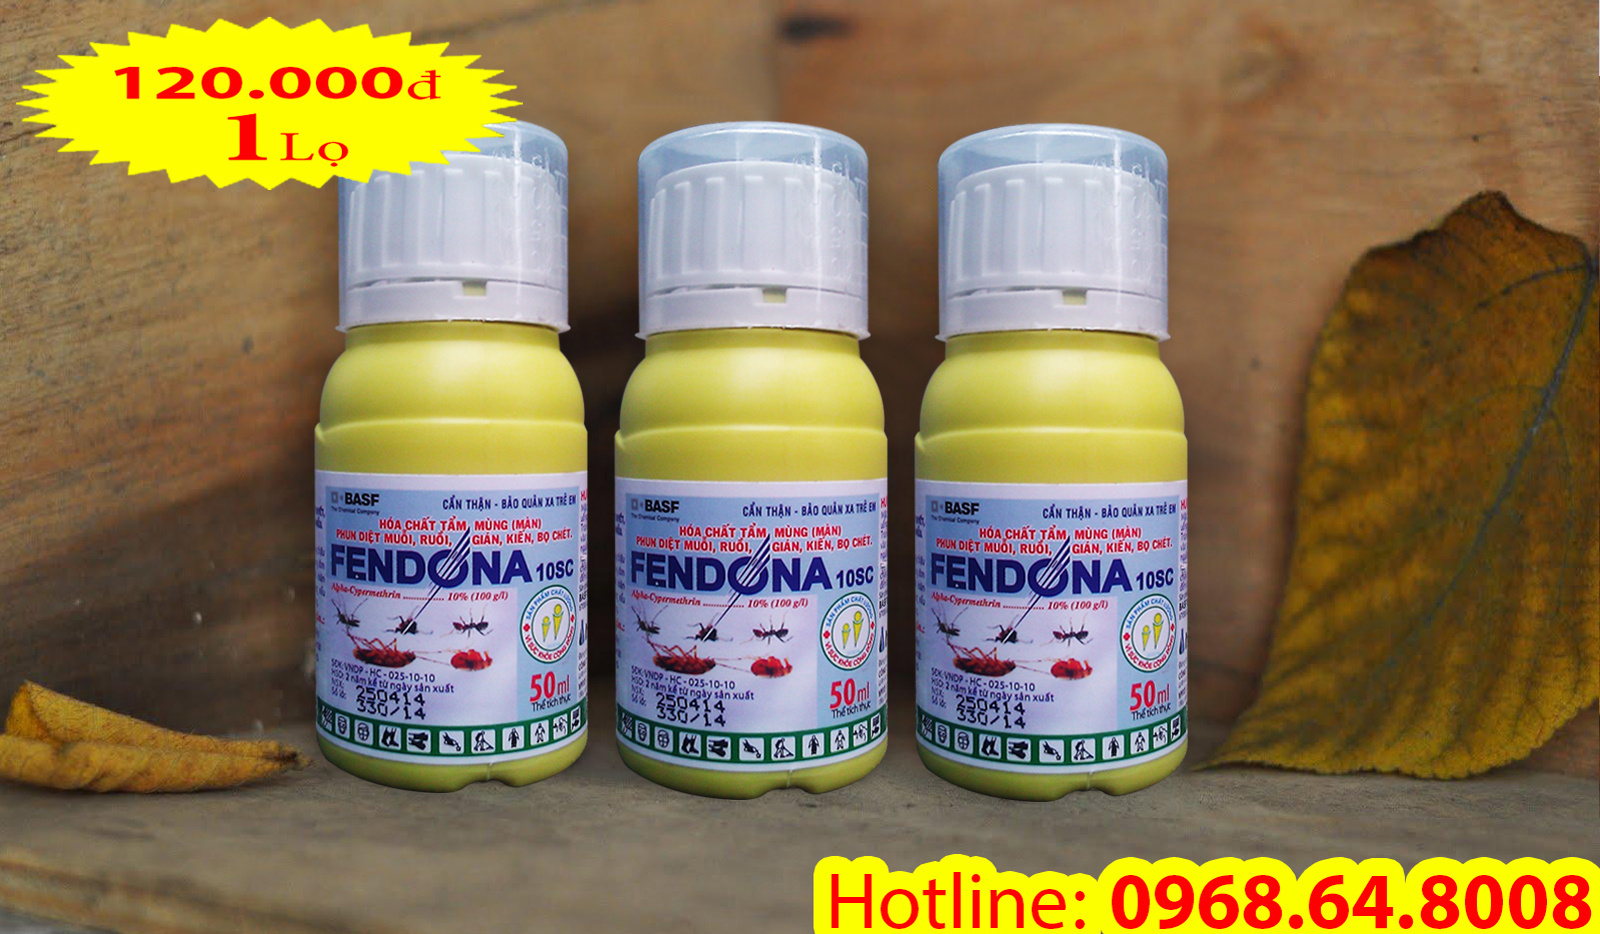 Fendona 10SC (50ml) - (BASF - CHLB ĐỨC) - Thuốc diệt côn trùng, muỗi, gián, ruồi, kiến, bọ chét...